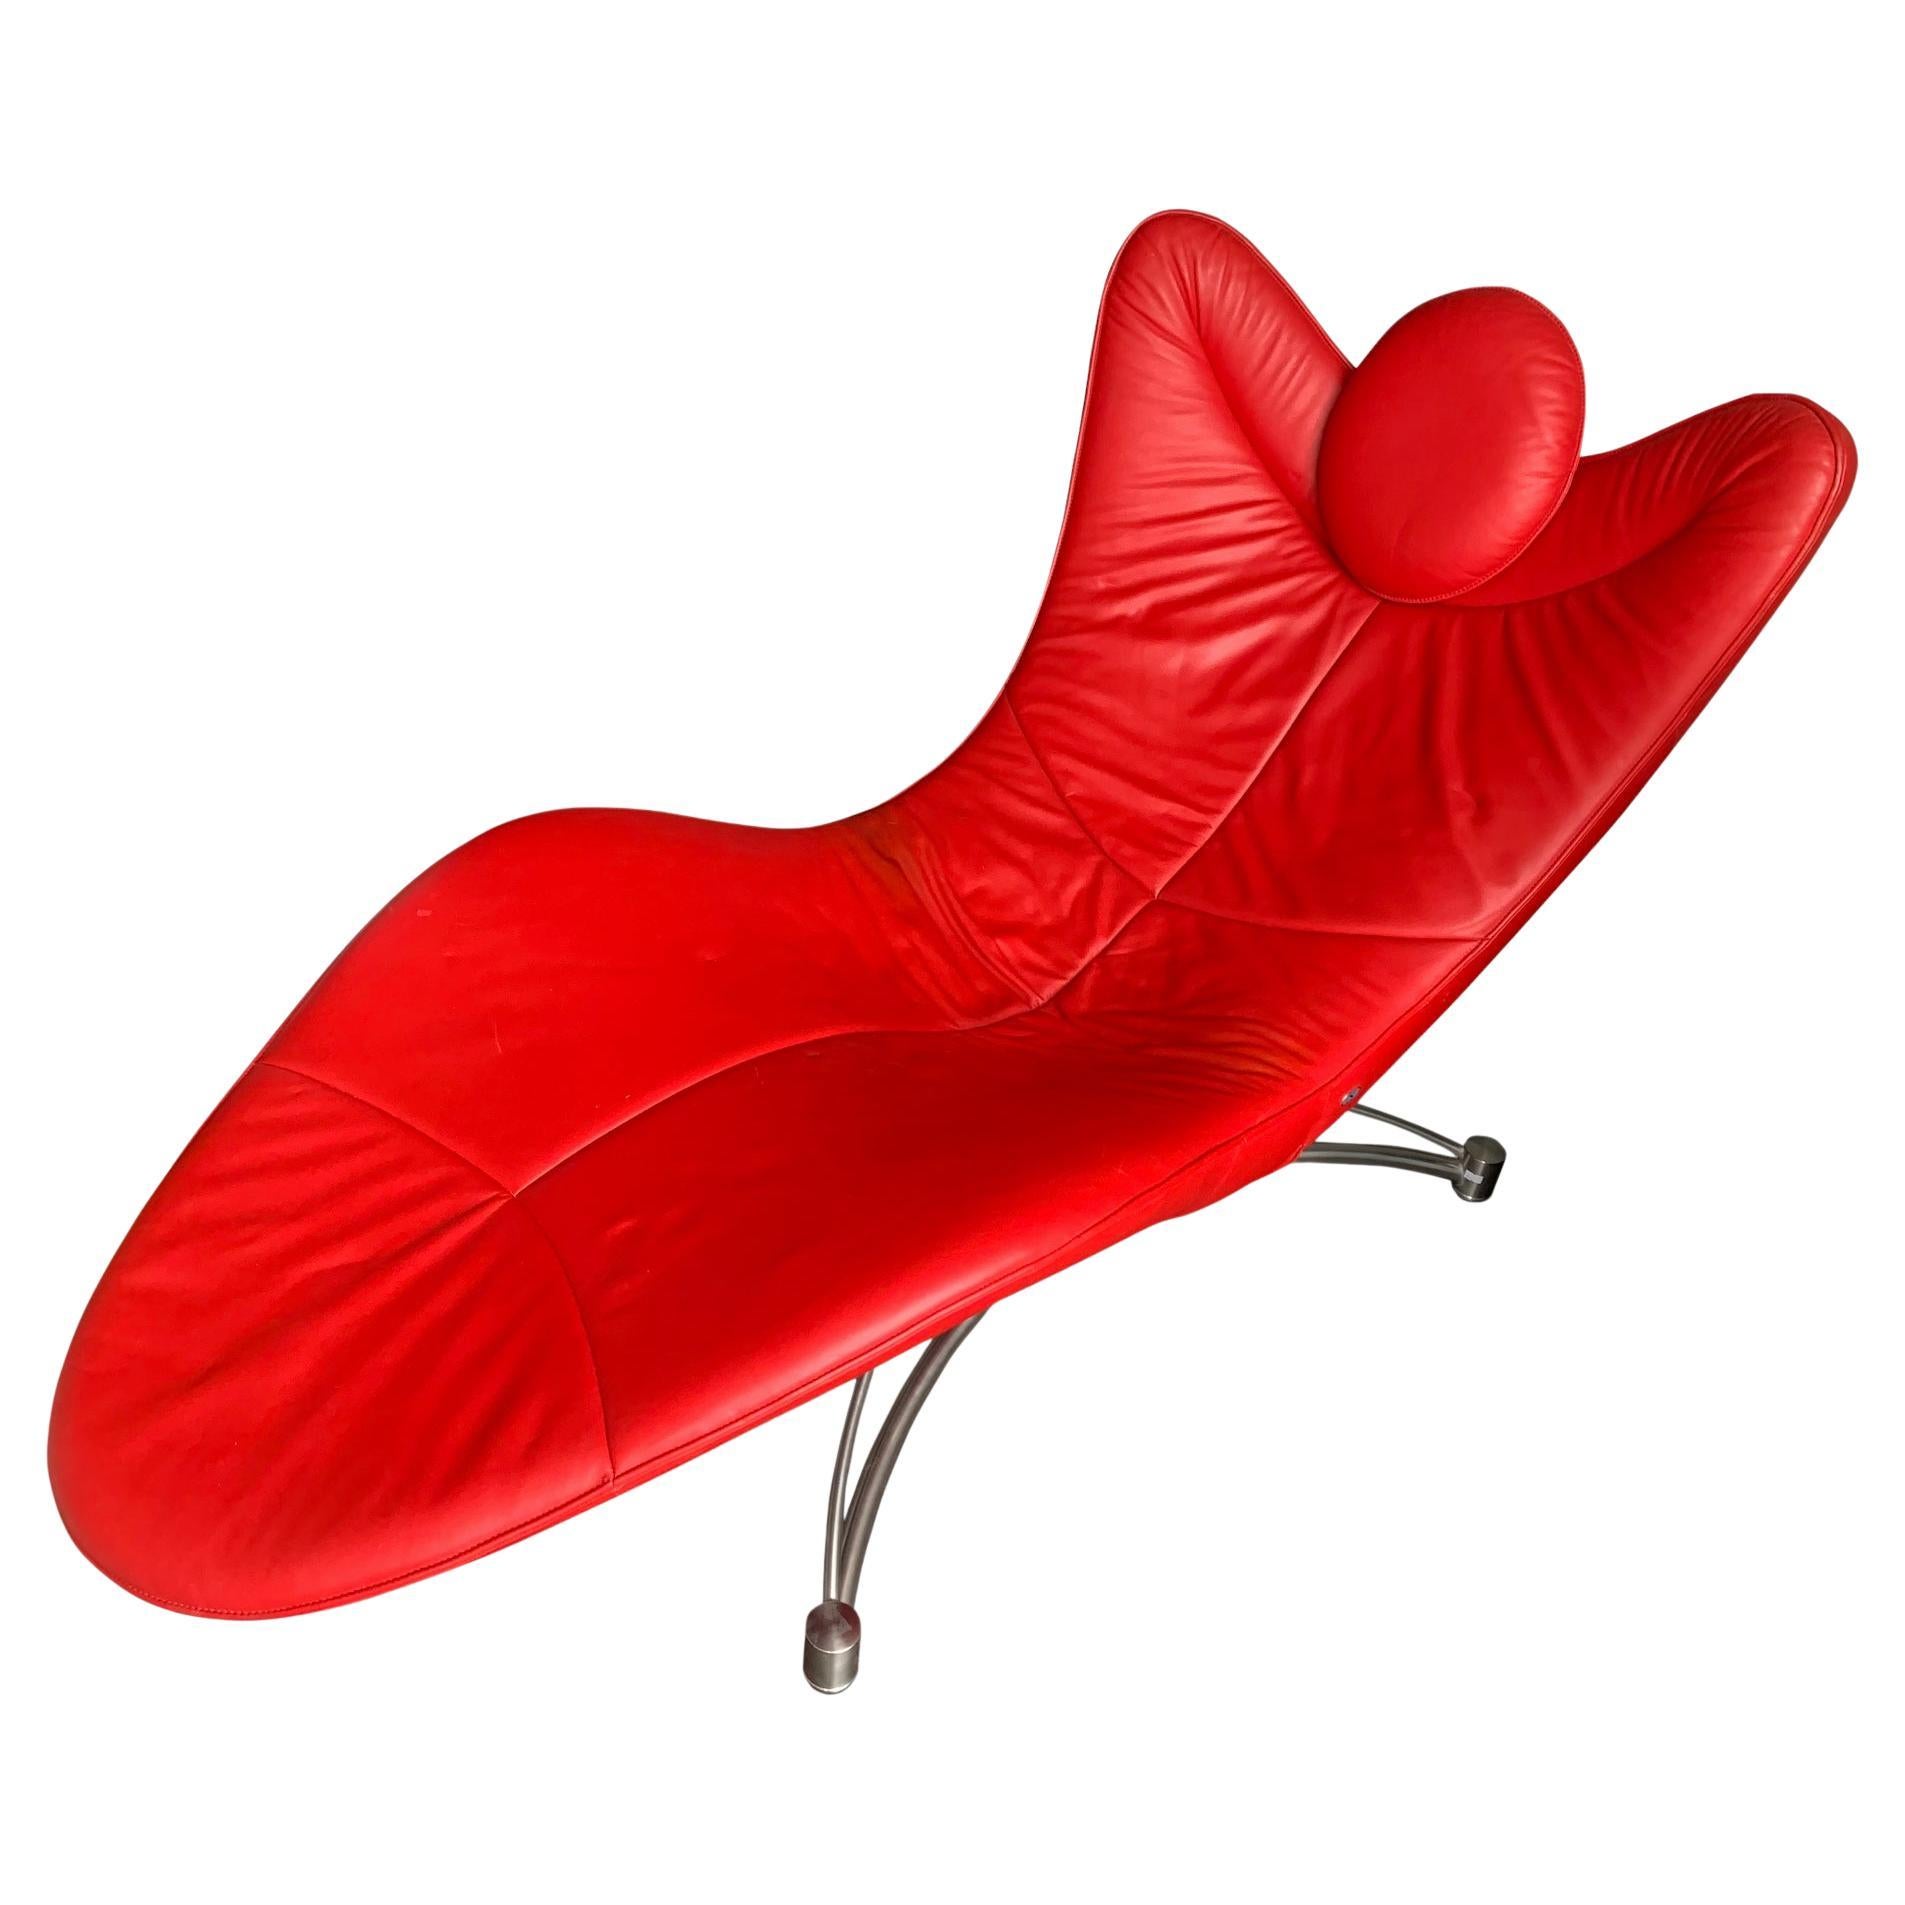 Jane Worthington Designer-Sessel aus rotem Leder und Stahl, De Sede Ds 151 